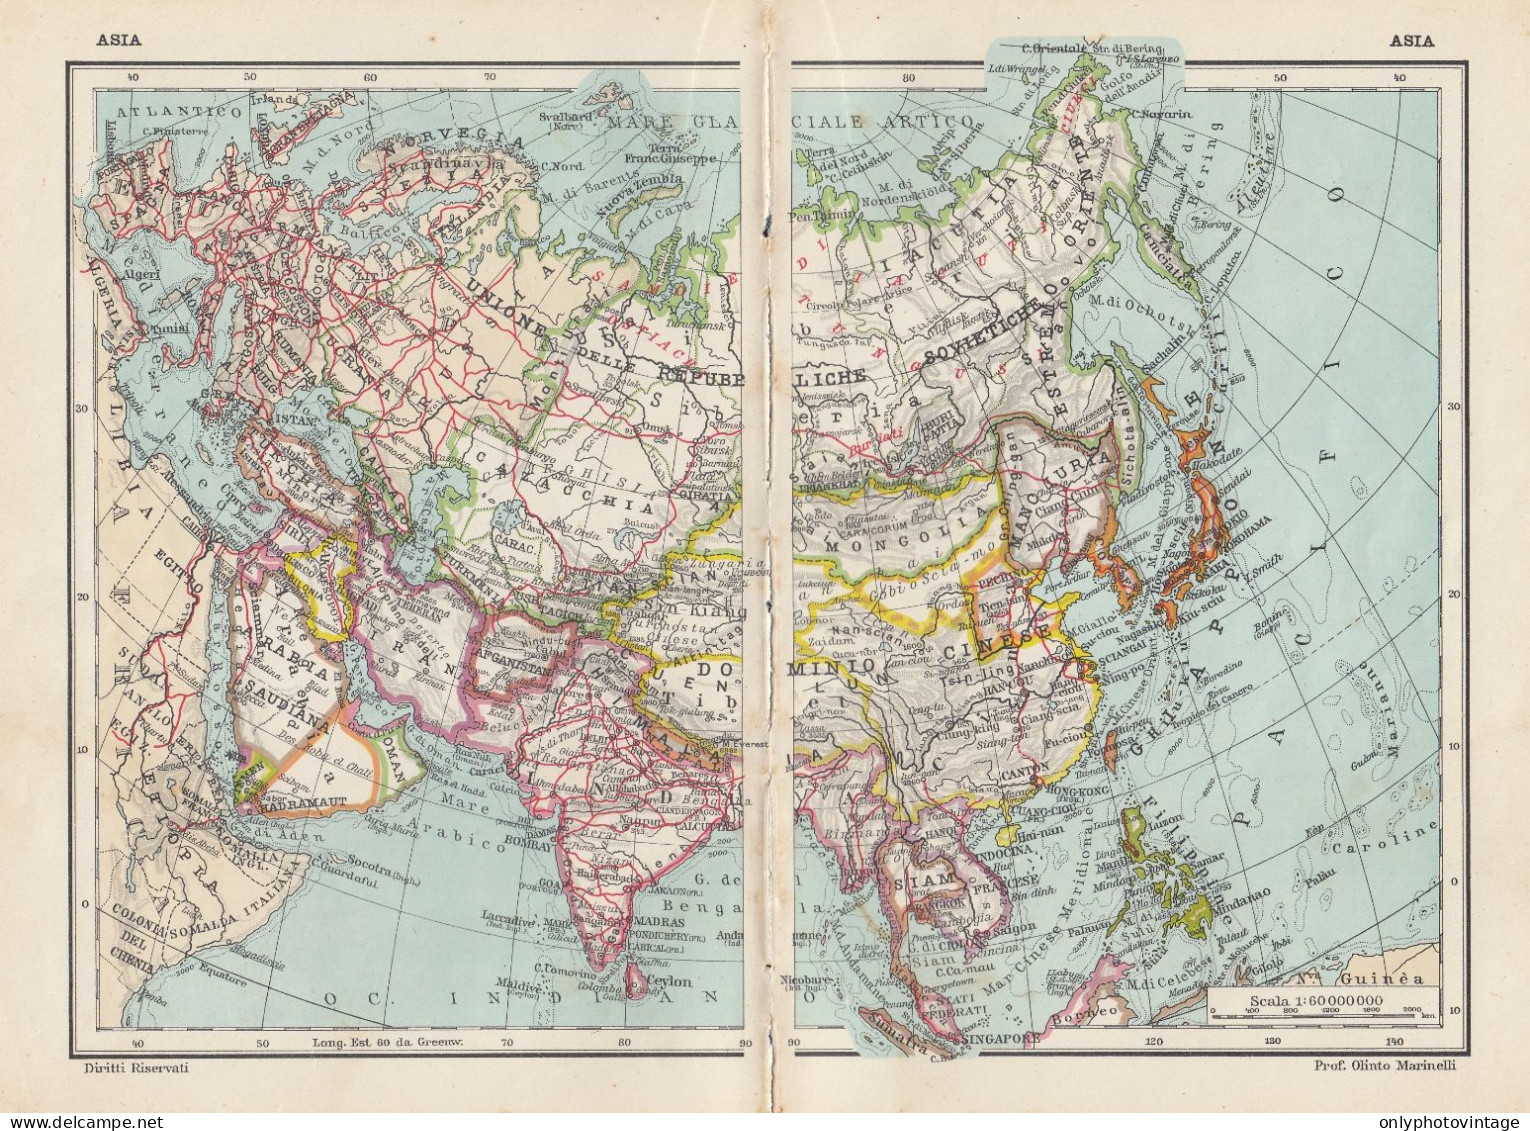 Asia - Carta Geografica D'epoca - 1936 Vintage Map - Cartes Géographiques